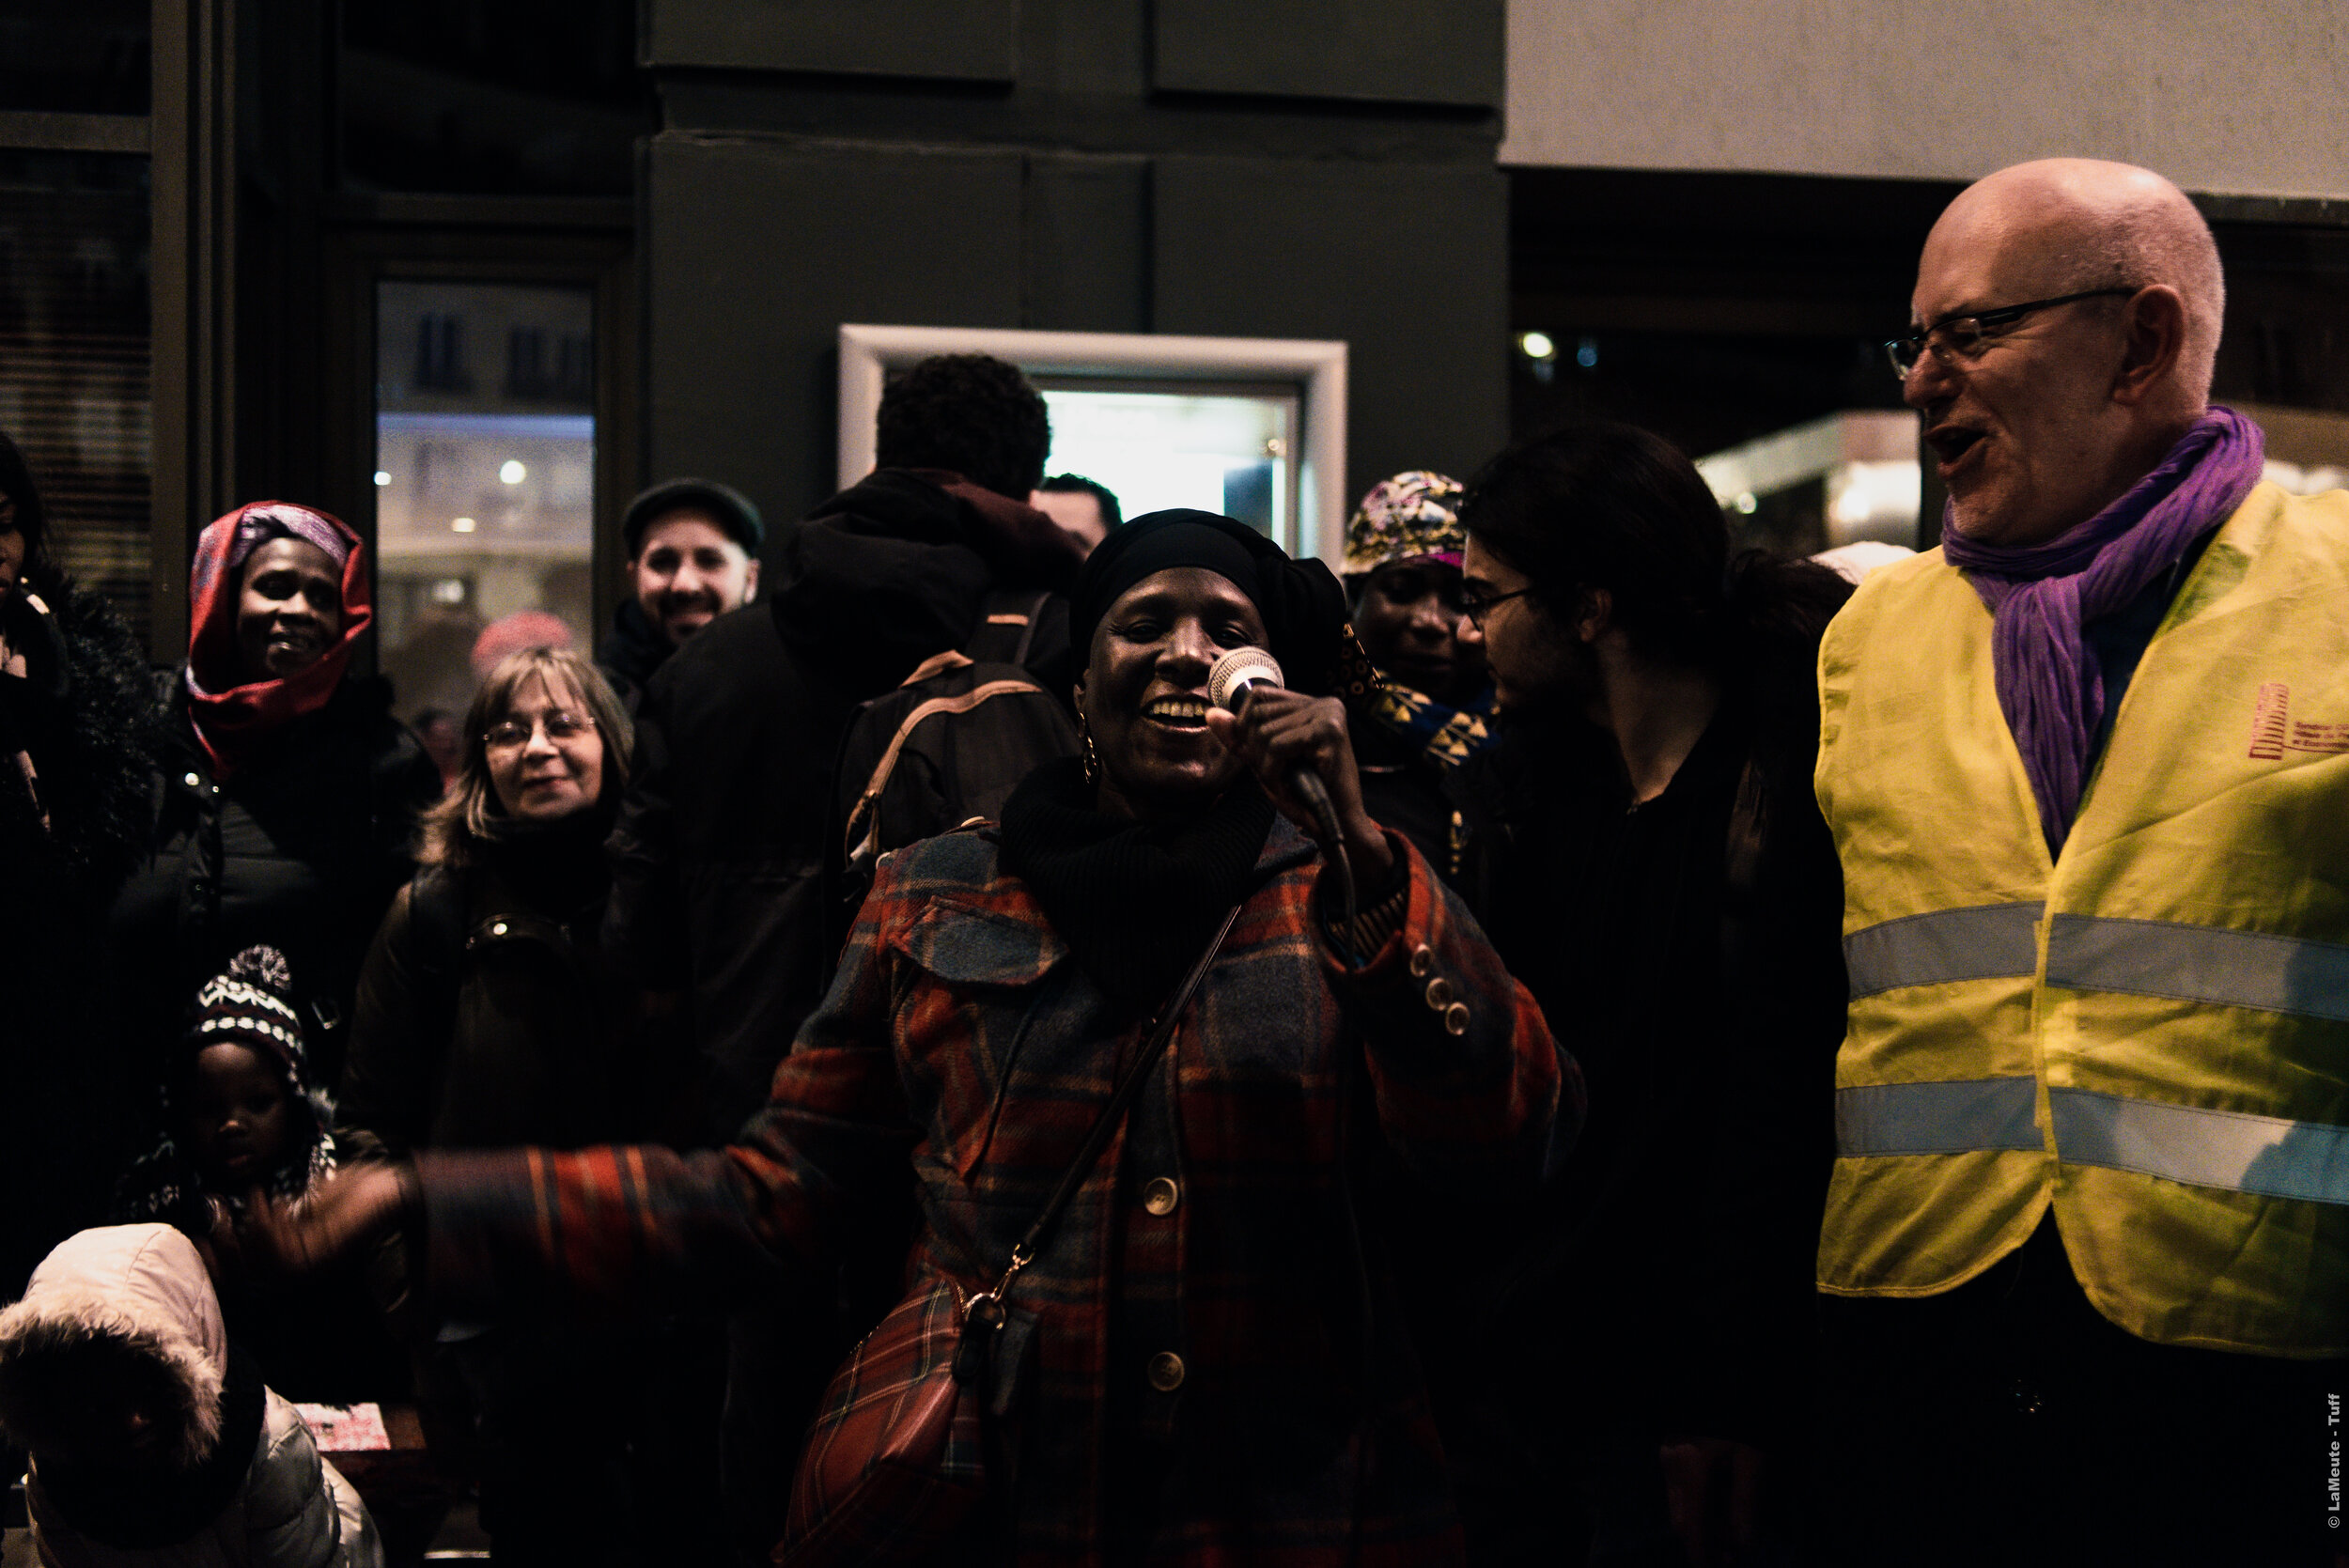  Une gréviste lance le slogan “solidarité” qui est repris par l’assemblée. Paris - 24/12/19 